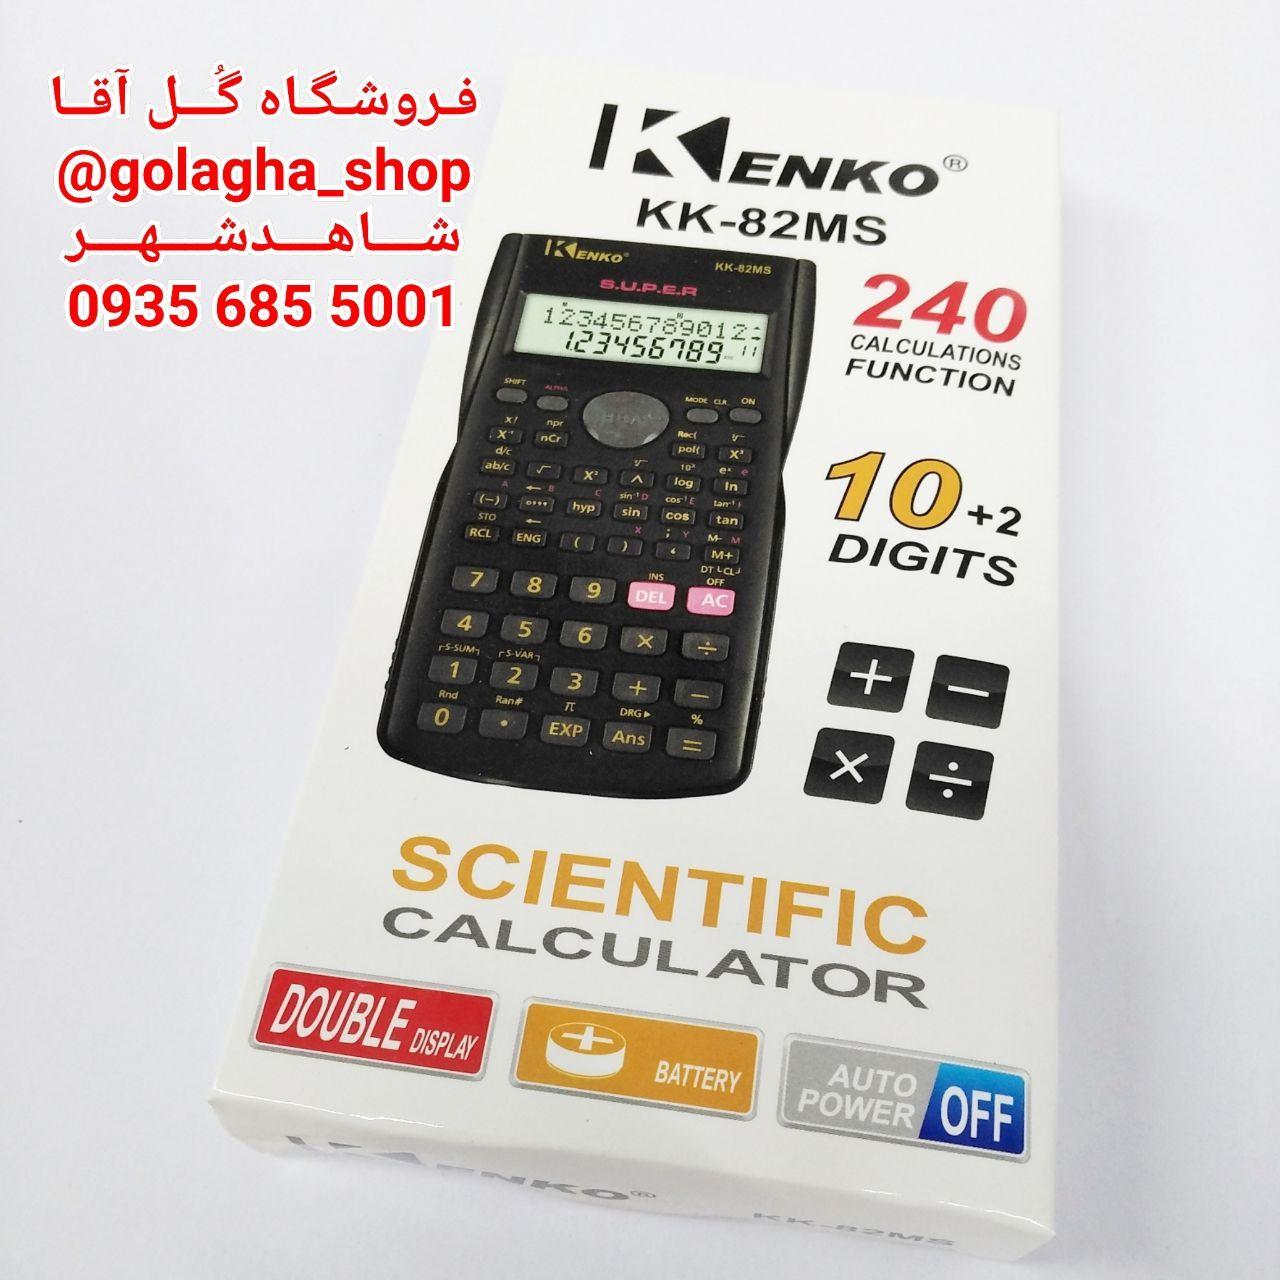 ماشین حساب مهندسی KK-82MS